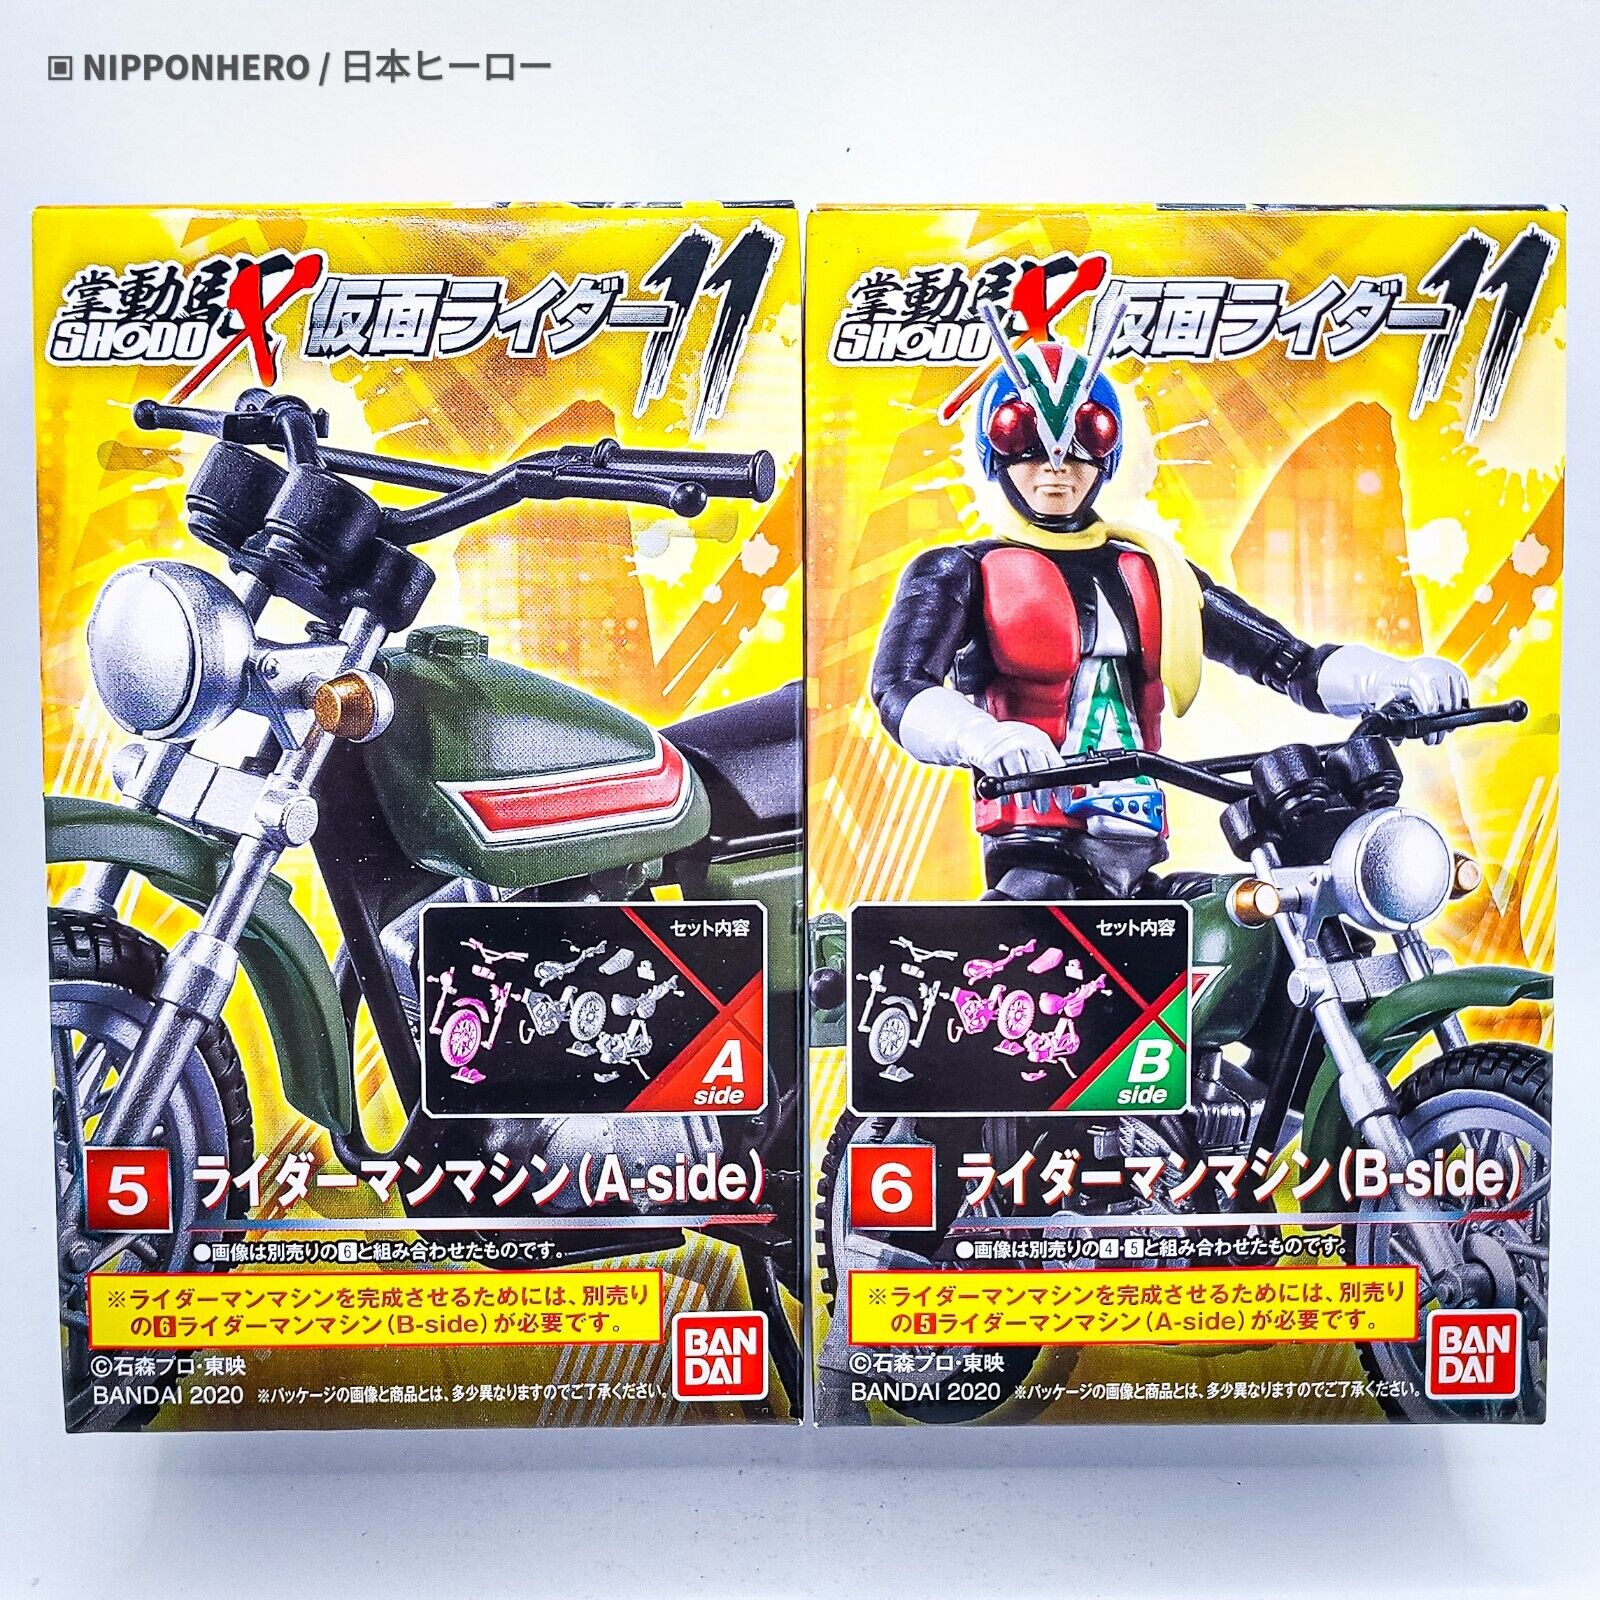 SHODO-X Kamen Rider RIDERMAN MACHINE MOTORCYCLE Vehicle Suzuki Showa Sodo 11 NEW